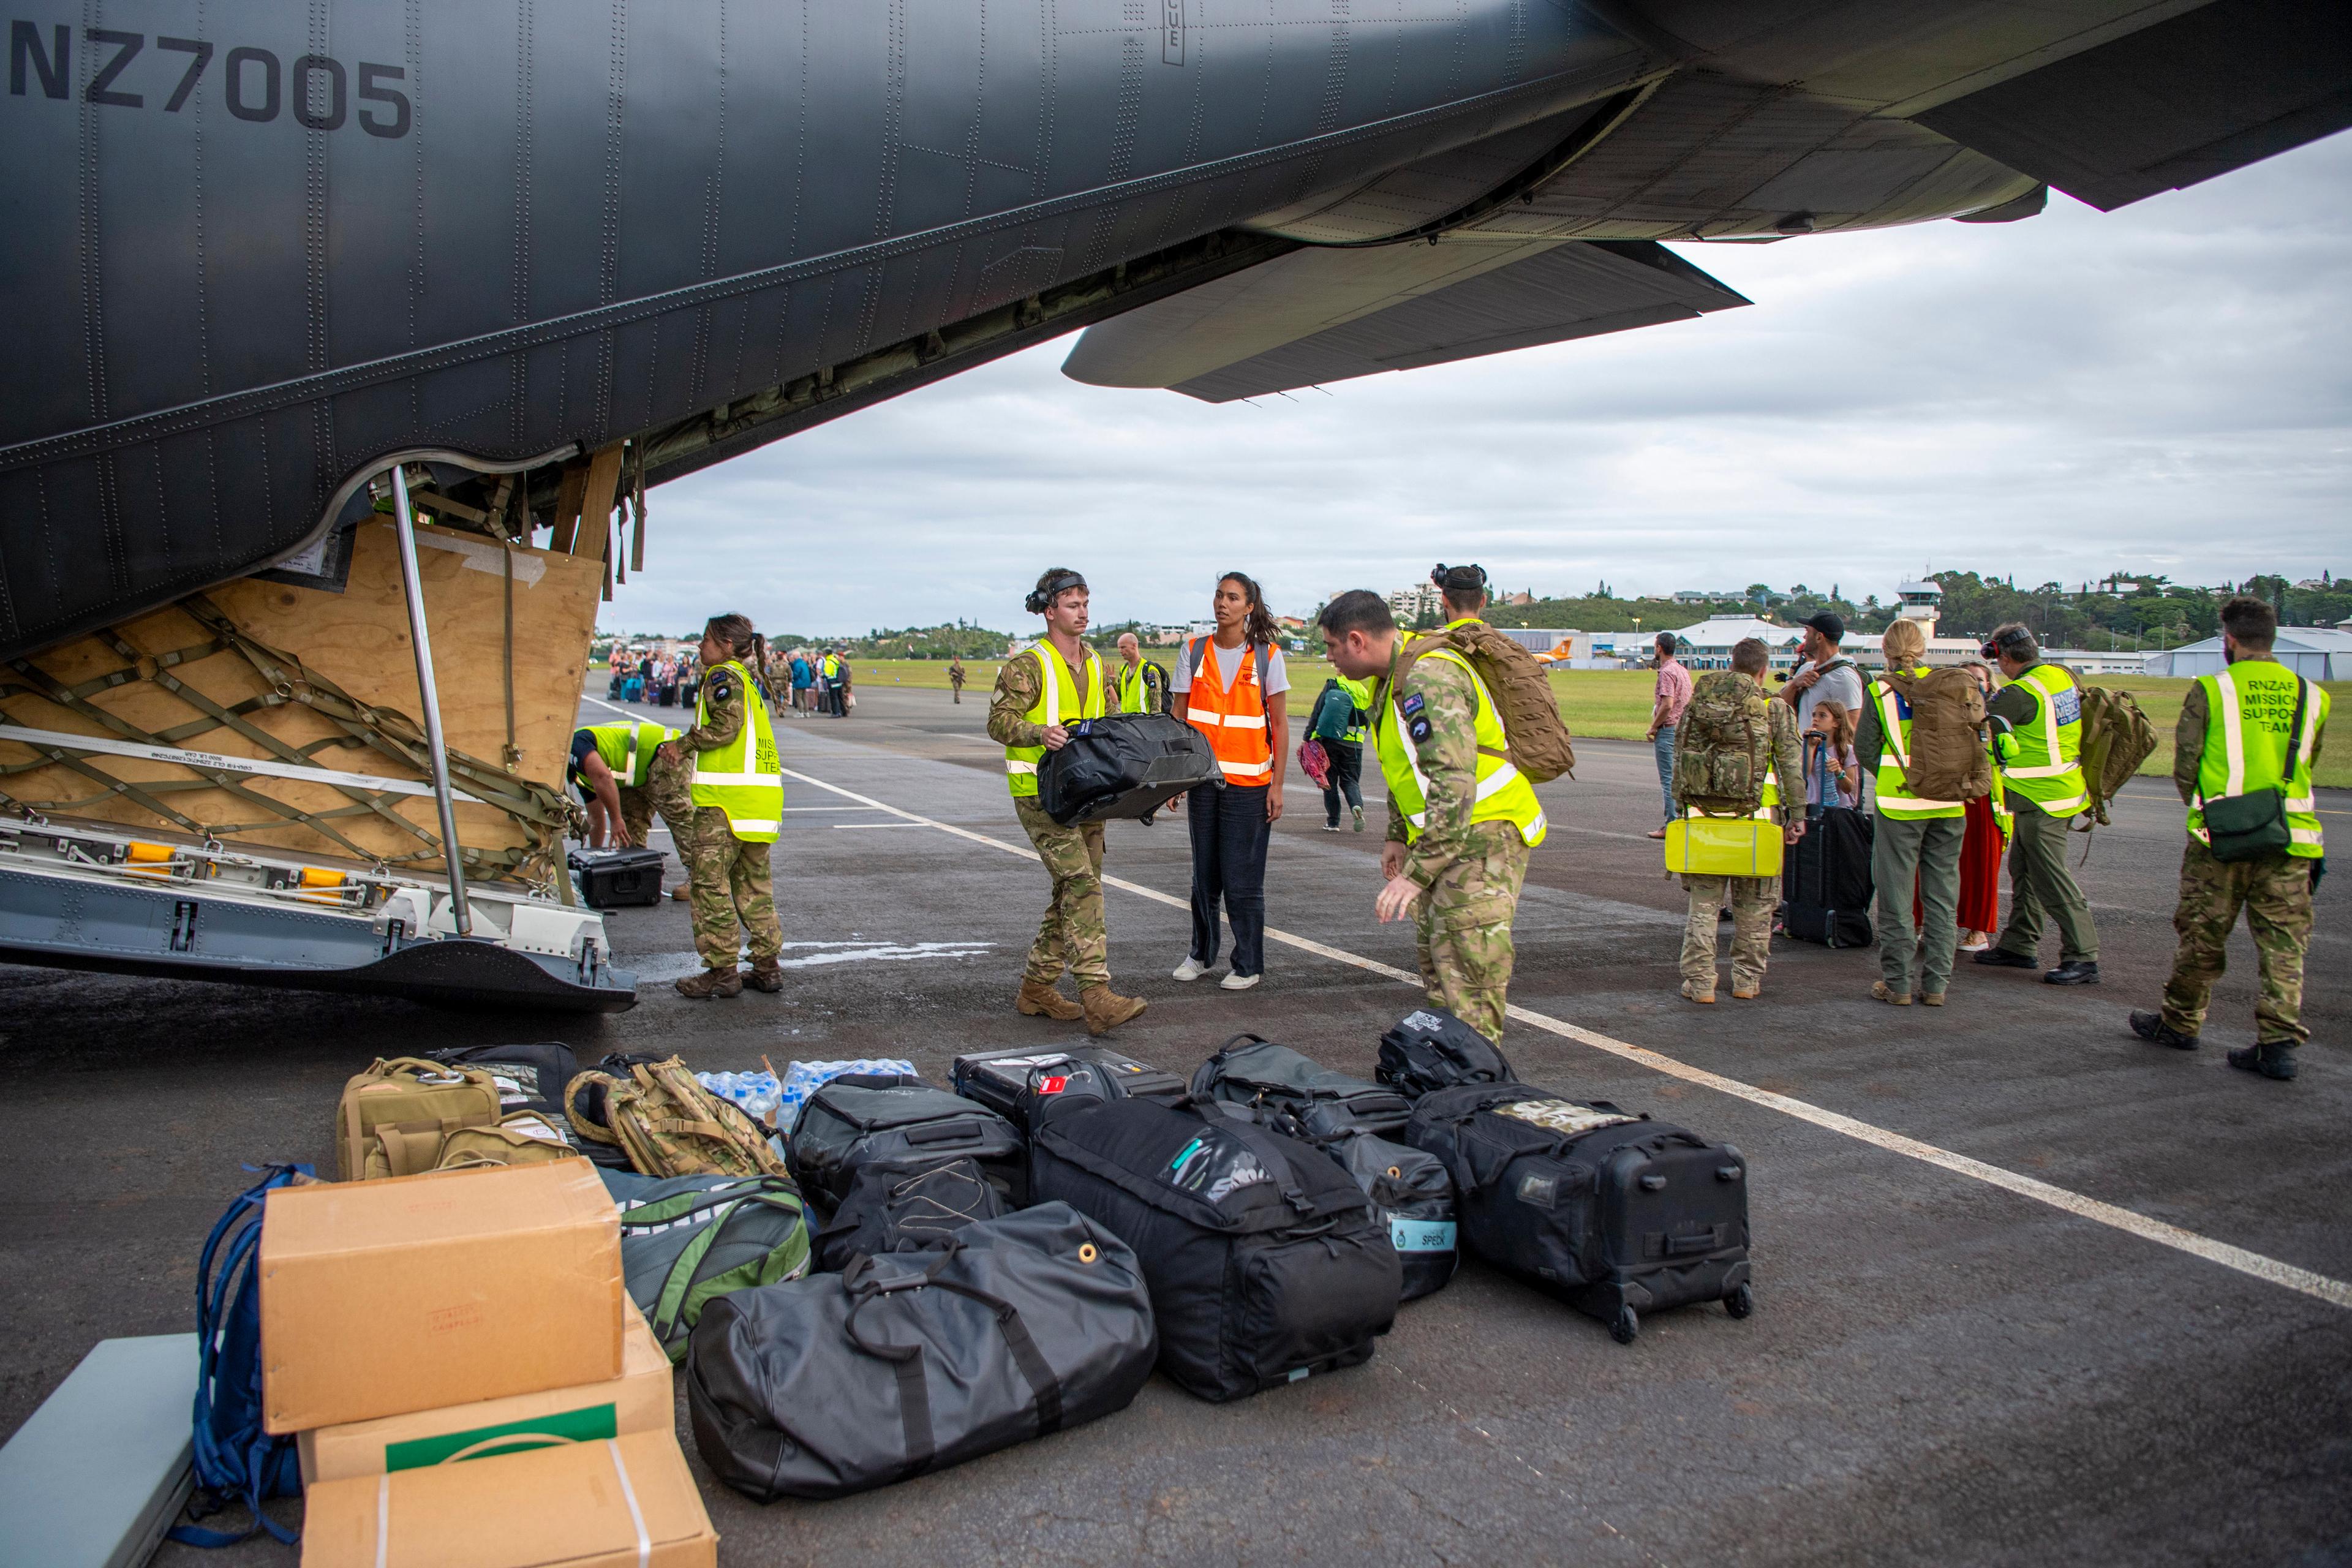 Turister från Nya Zeeland gör sig beredda på avfärd efter att landets regering tidigare i veckan beslutat att evakuera sina medborgare. Bilden är tagen 21 maj. Foto: Chris Weissenborn/AP/TT